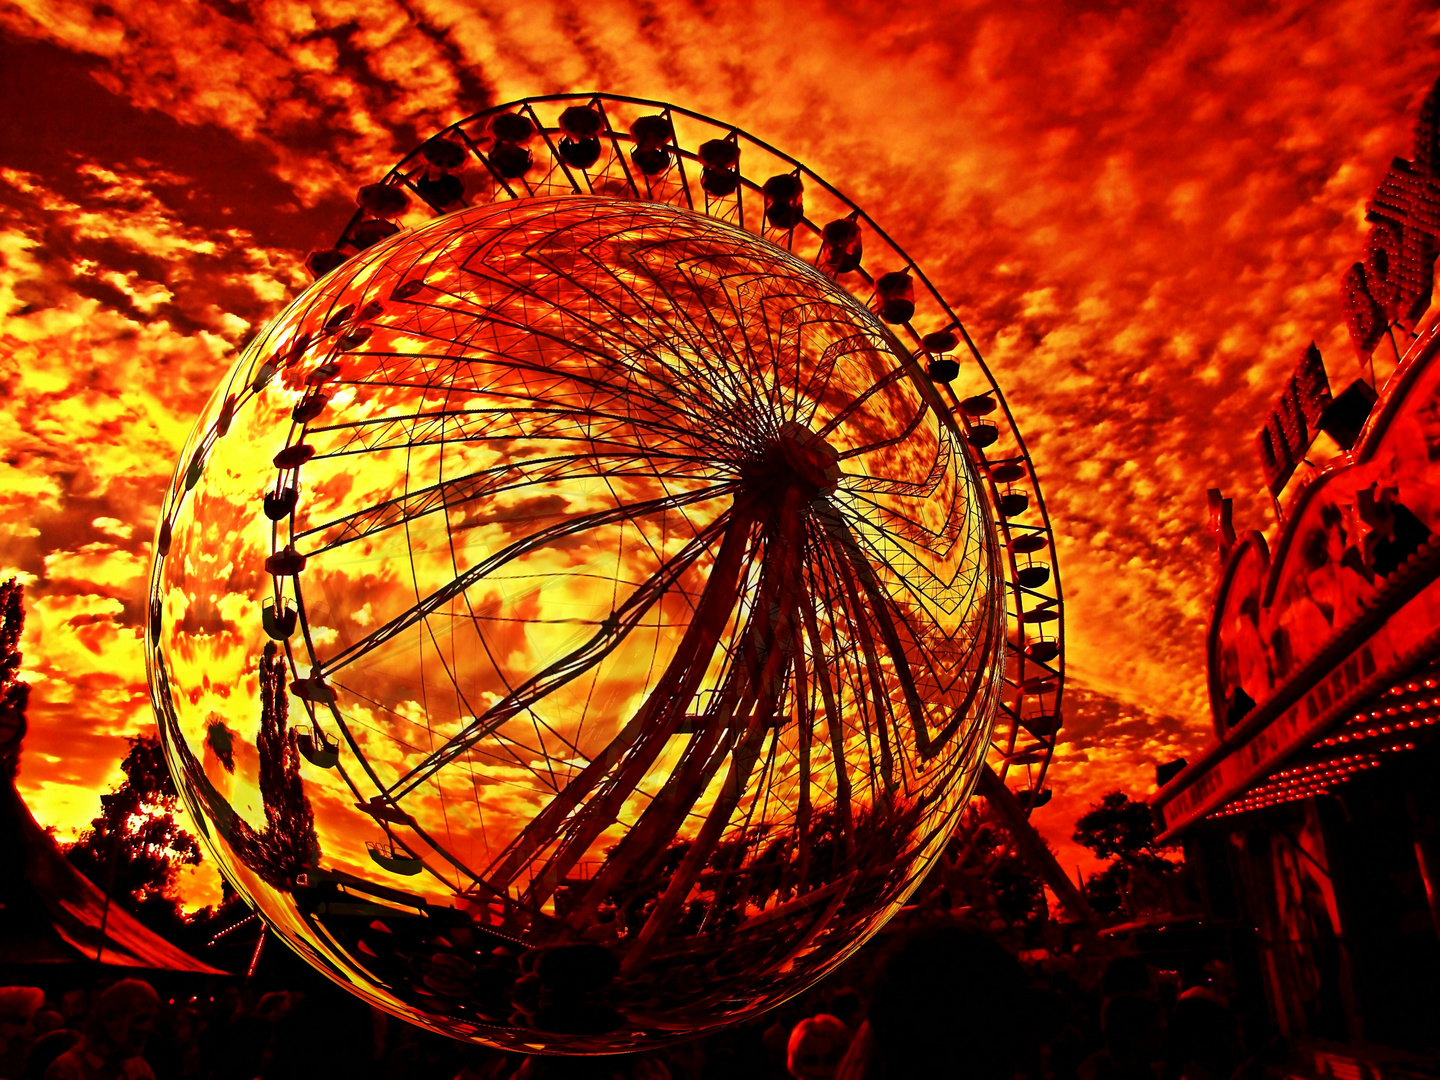 Riesenrad  -  Ferris wheel